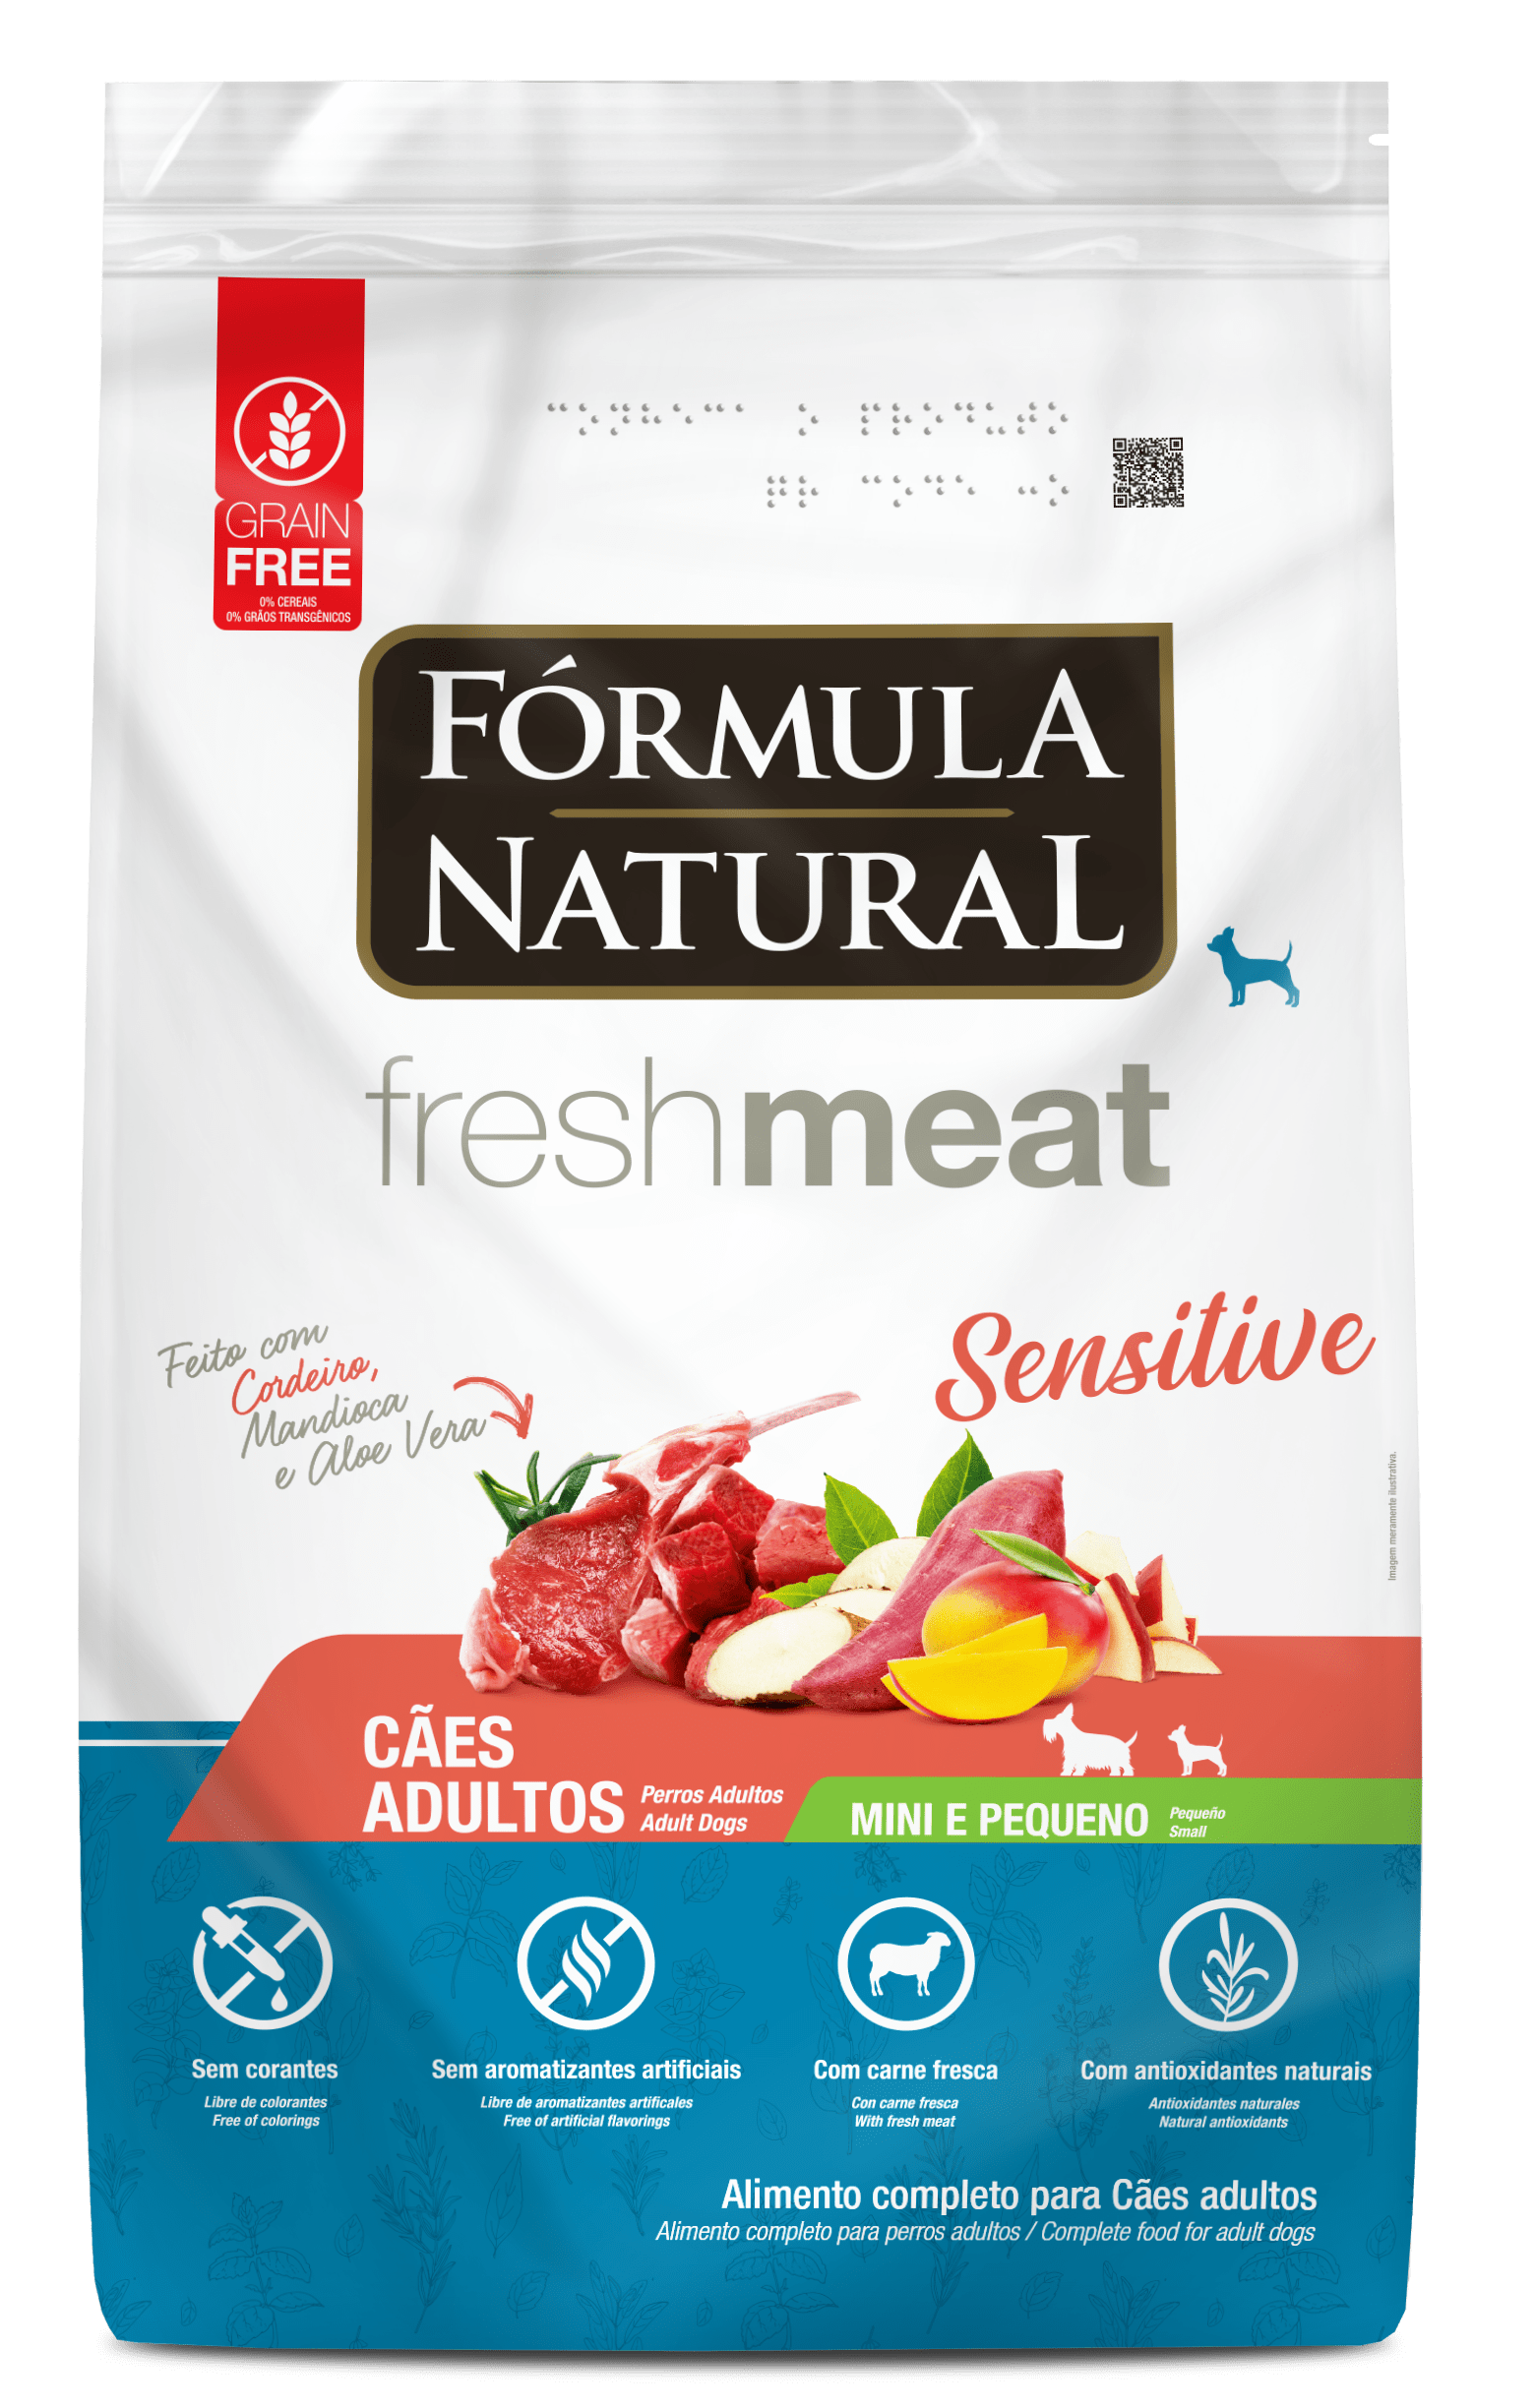 Fórmula Natural Fresh Meat Sensitive Perros Adultos Portes Mini y Pequeño